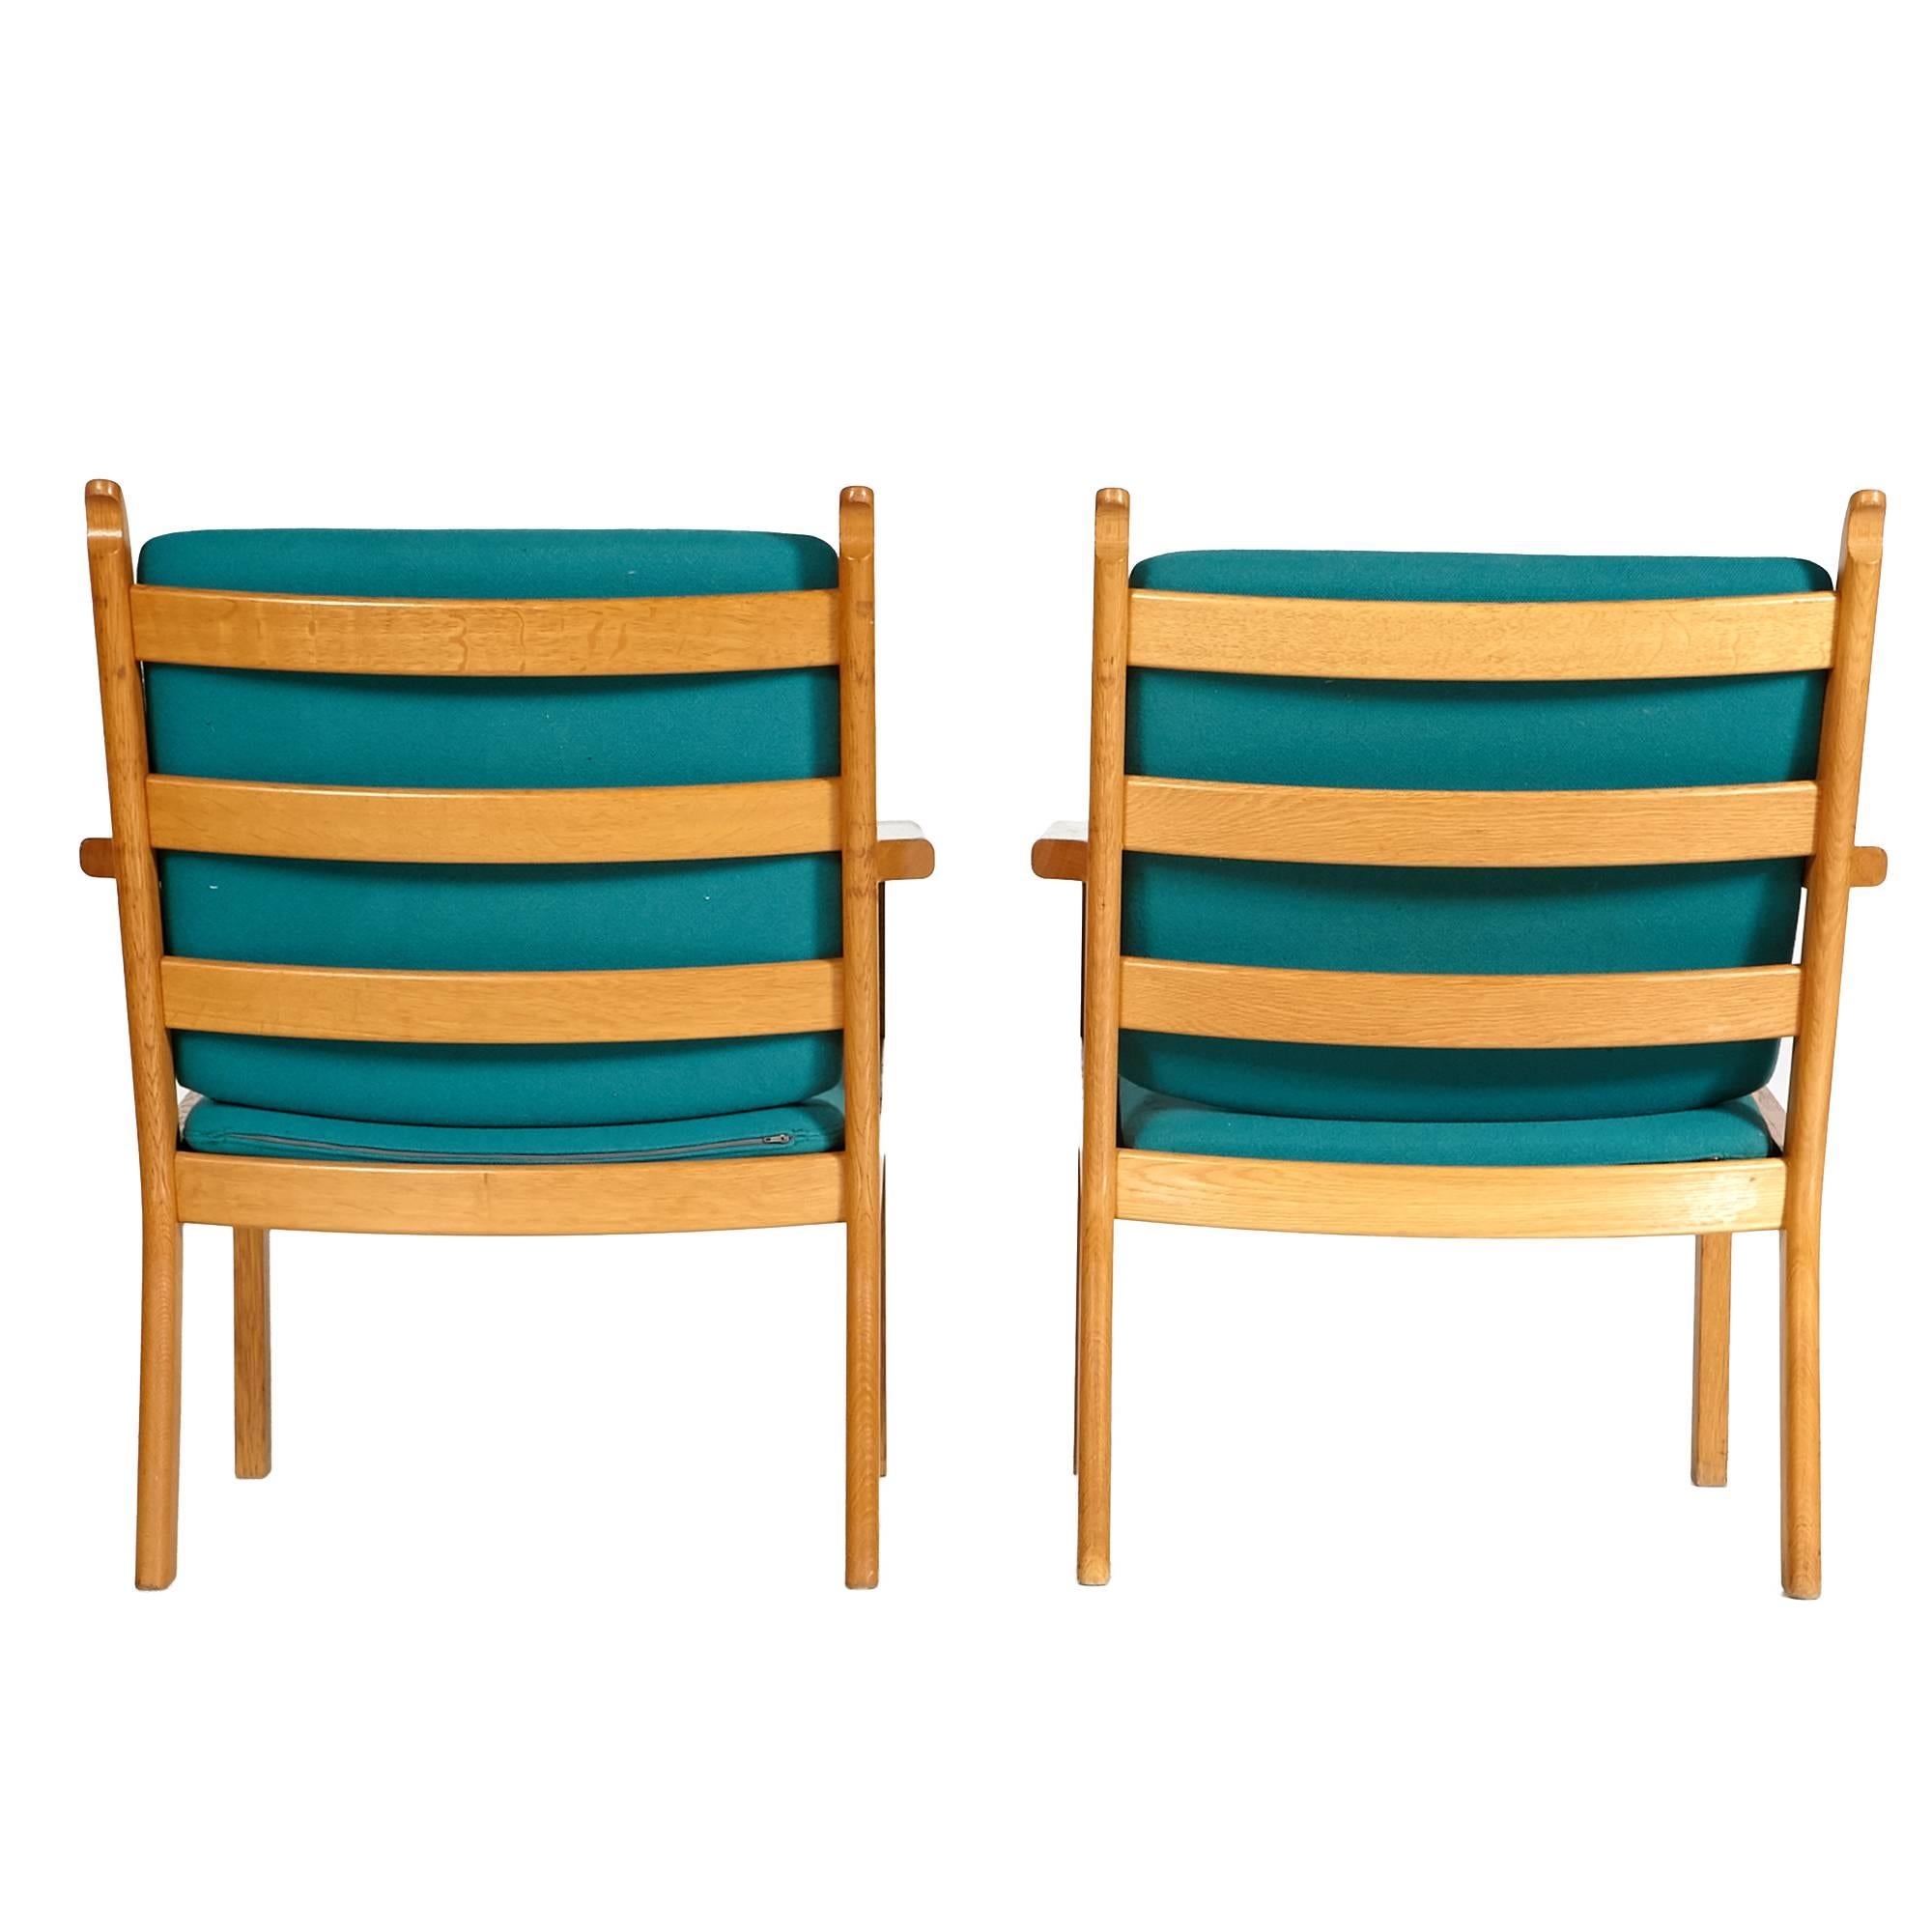 Fabric Hans J. Wegner Oak Lounge Chairs by GETAMA, Pair